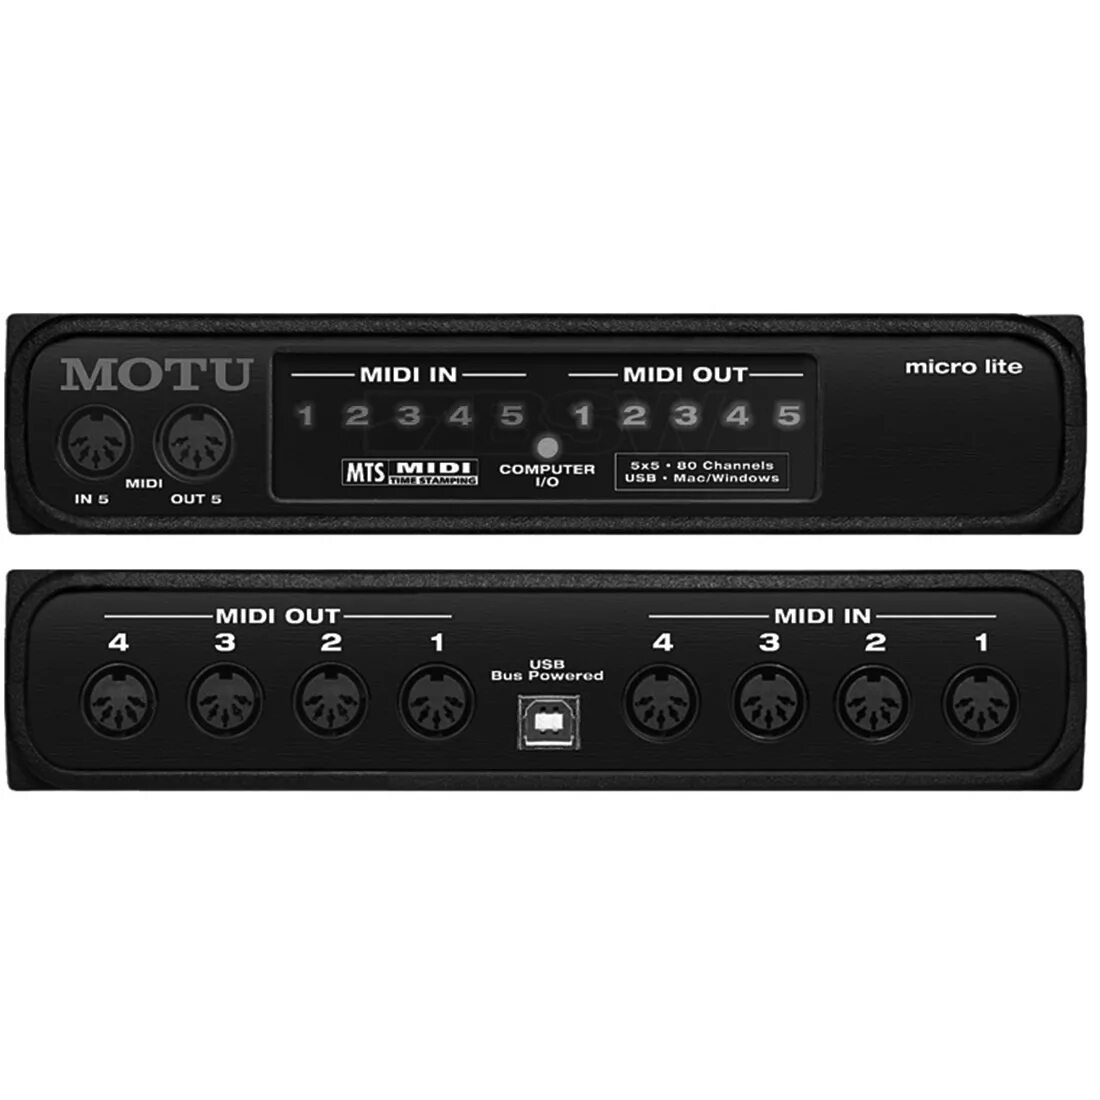 Midi-Интерфейс Motu Micro Lite. Motu Ultralite mk3 Hybrid. Motu 828 mk3 Hybrid панель. Motu Monitor 8.